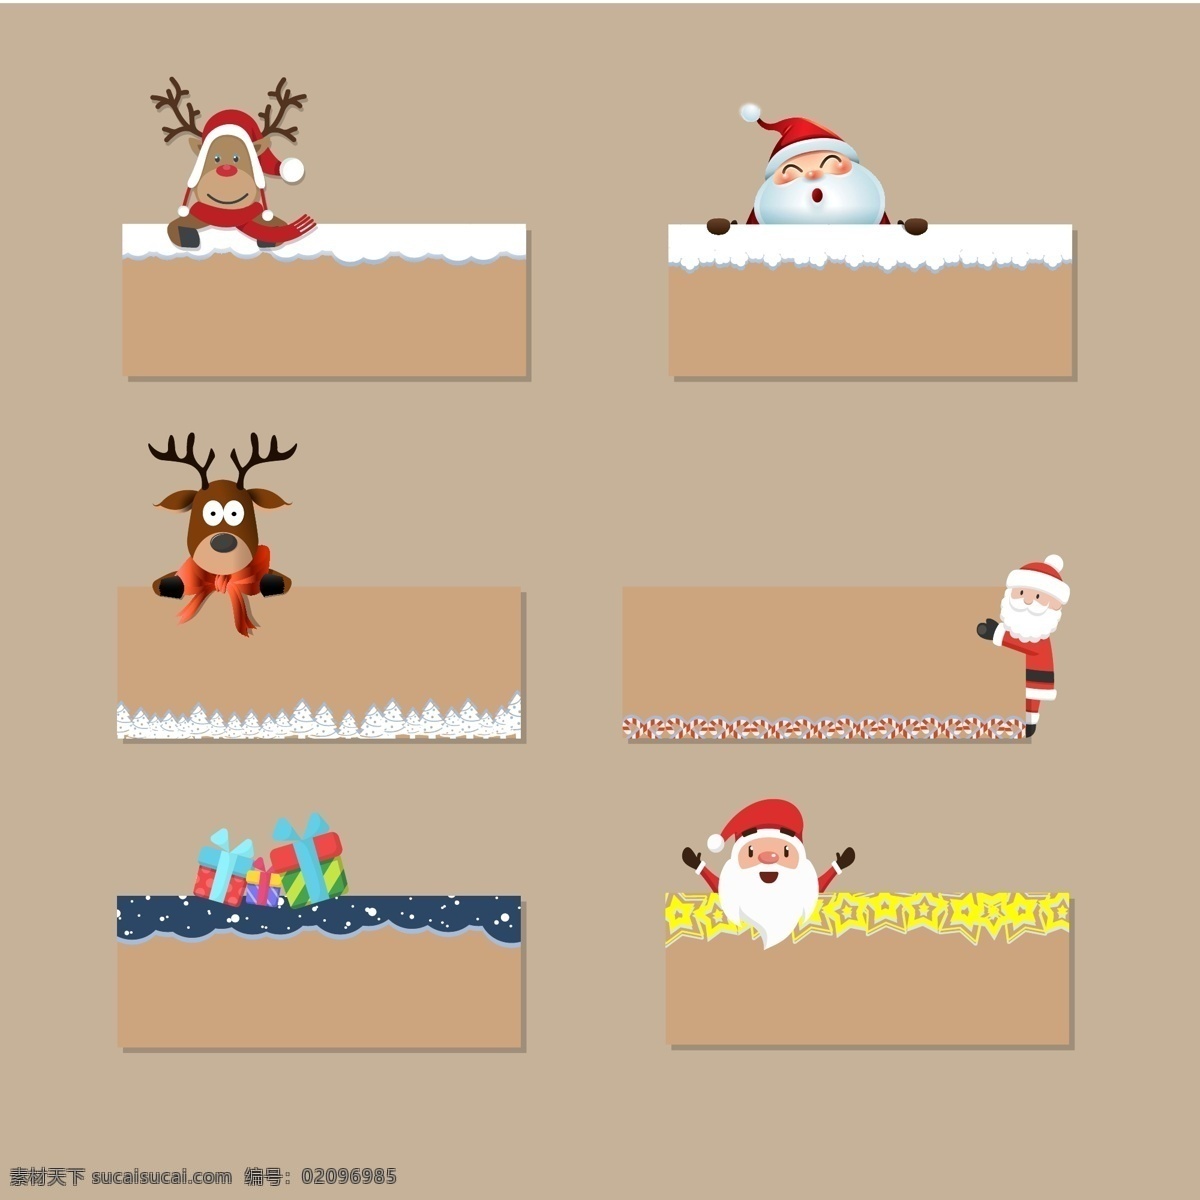 圣诞节 促销活动 标签 对话框 促销对话框 活动标签 圣诞老人 鹿子 雪花 圣诞树 礼盒 星星 糖果 卡通可爱标签